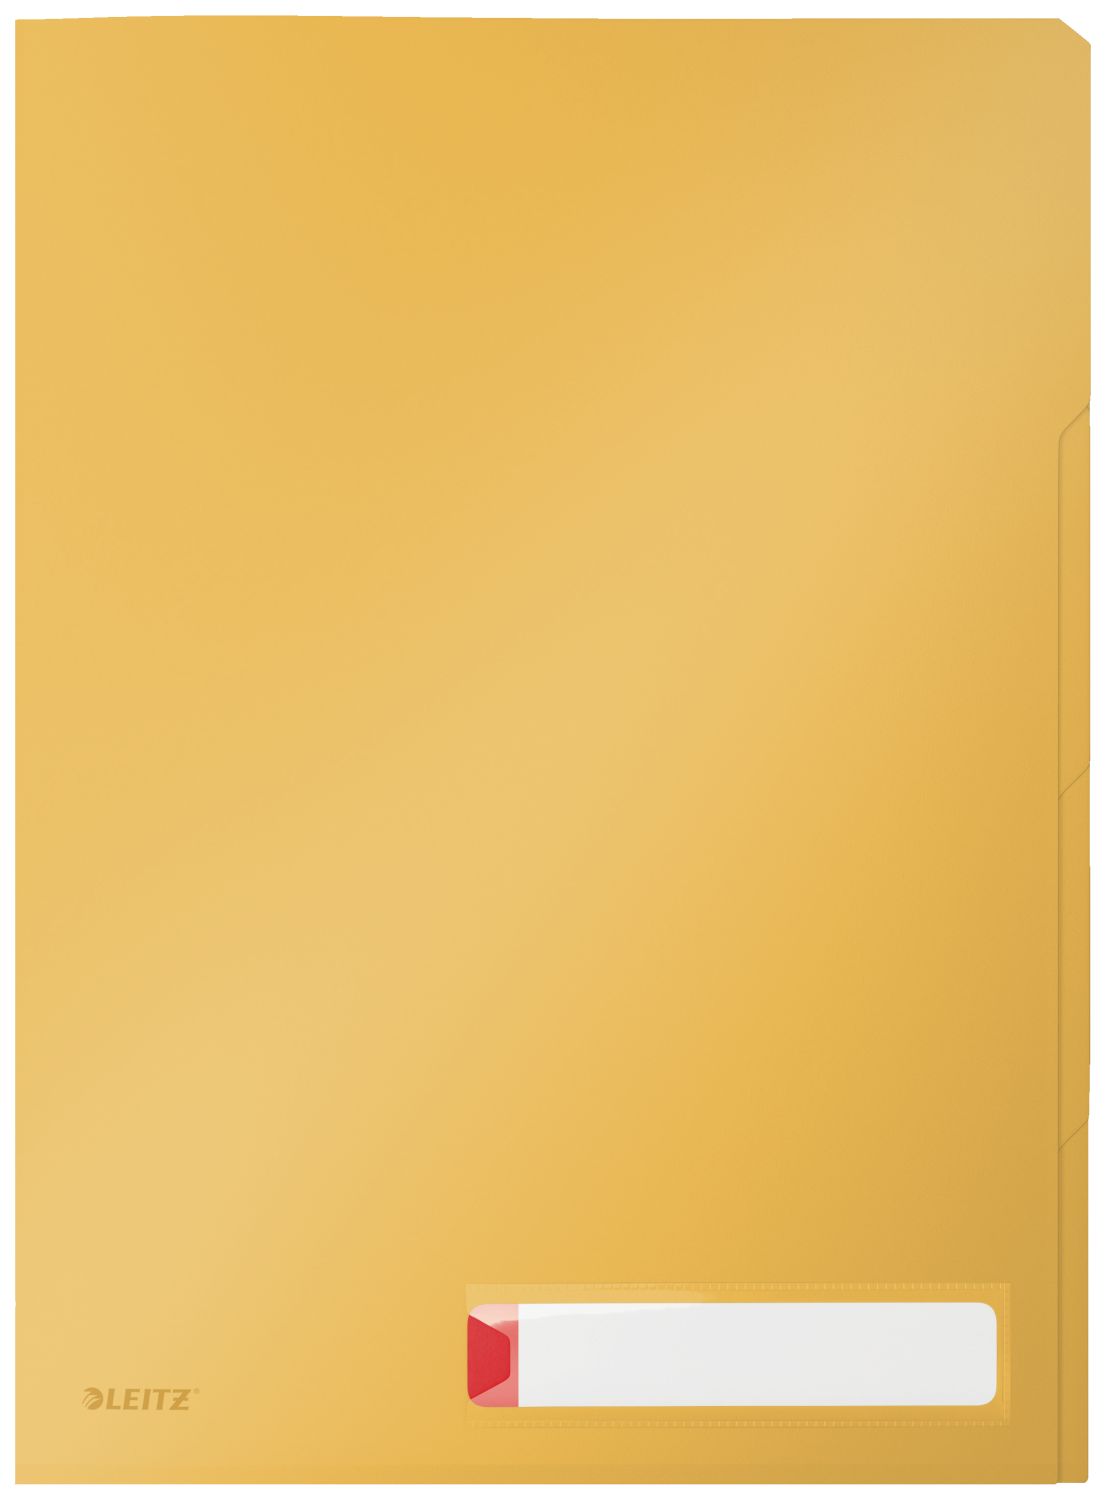 Sichthüllen Leitz Privacy 4716-00-19, DIN A4, 0,20 mm PP, blickdicht, 3 Fächer, gelb matt, 3 Stück